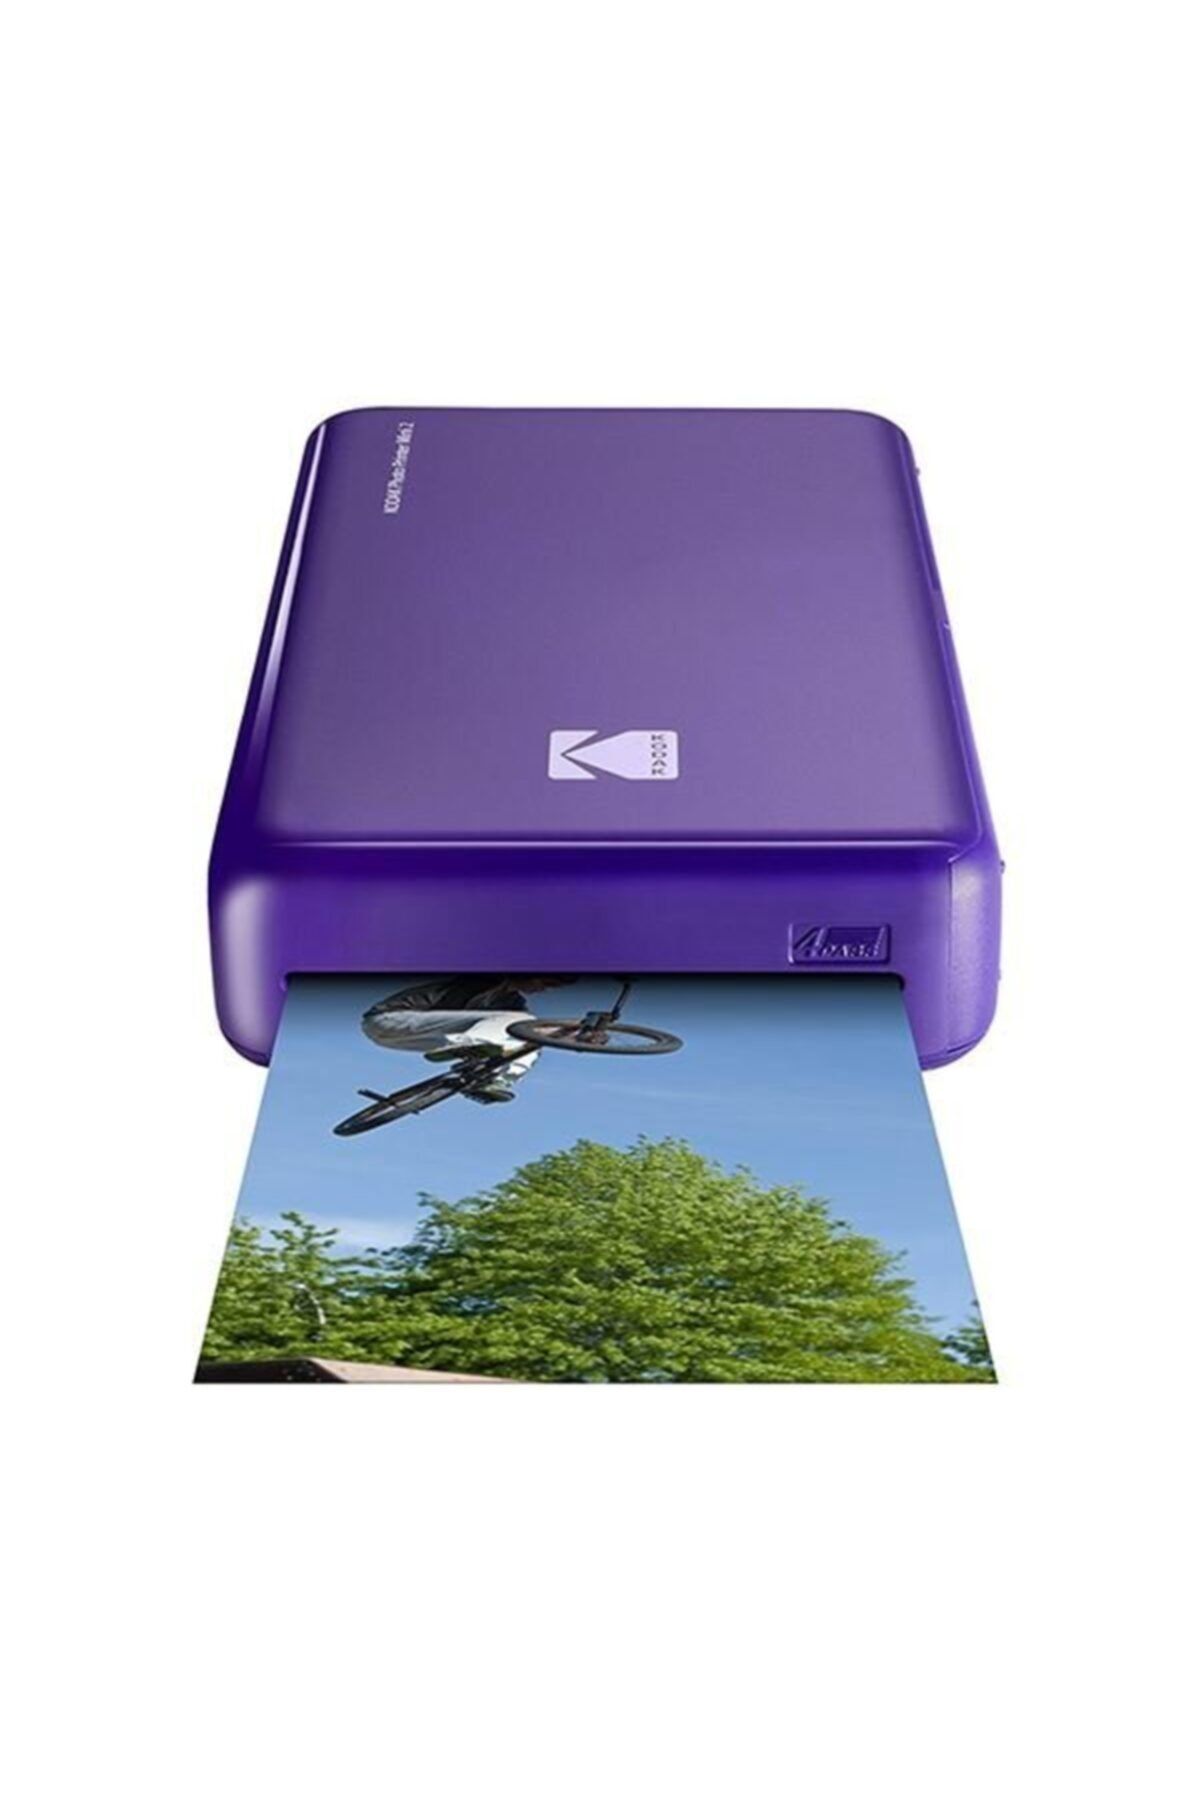 Kodak Mini 2, Bluetooth & Nfc Bağlantılı Akıllı Telefondan Baskı, Pass Taşınabilir Fotoğraf Yazıcısı